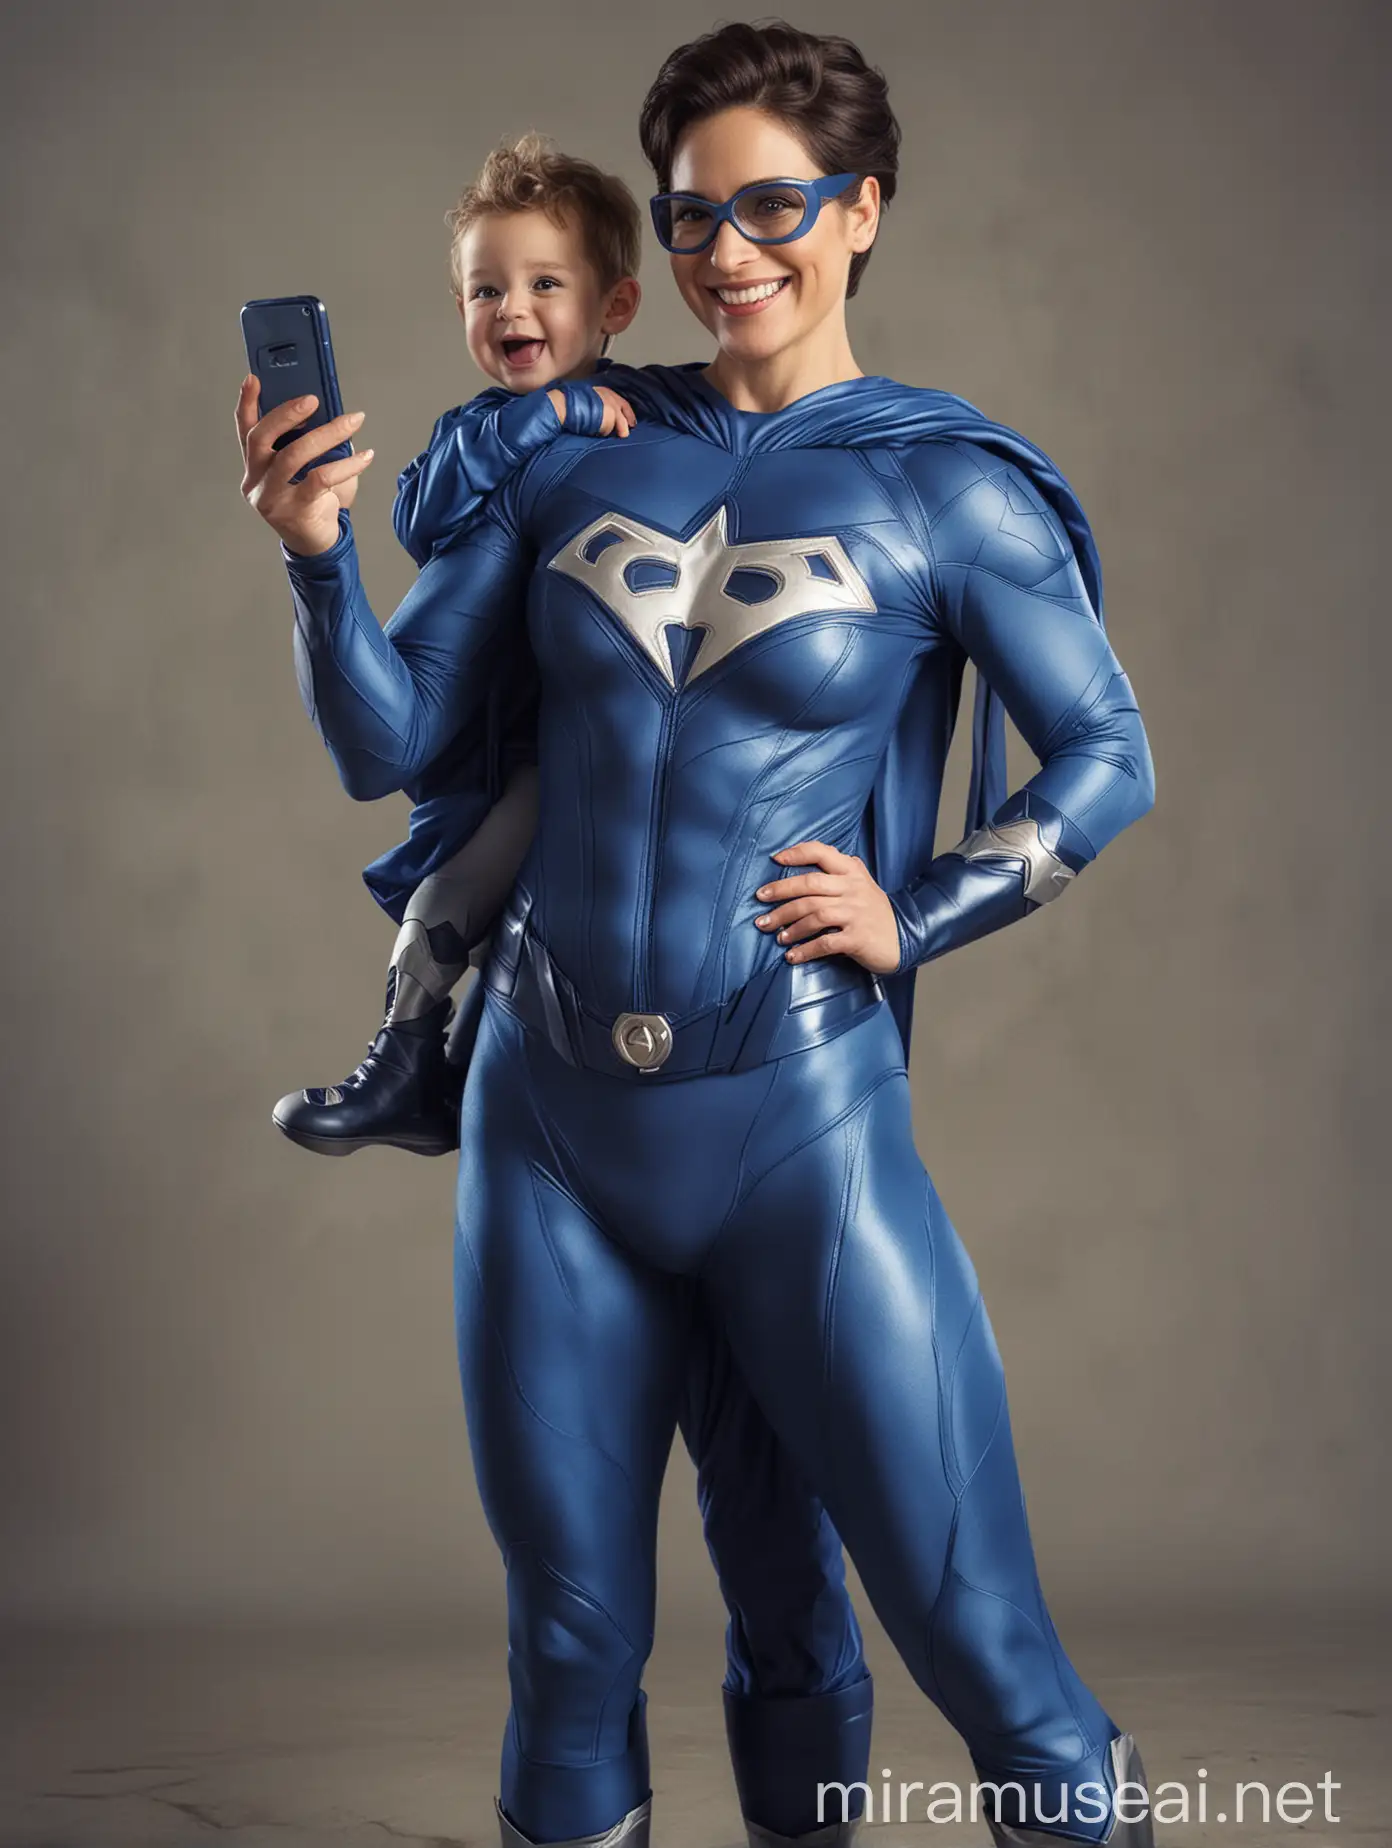 Una mujer mamá agradable y de buen parecer, vestida con un traje azul de superhéroe, con un celular en mano y acompañada de su hijo sonriente y de buen parecer.